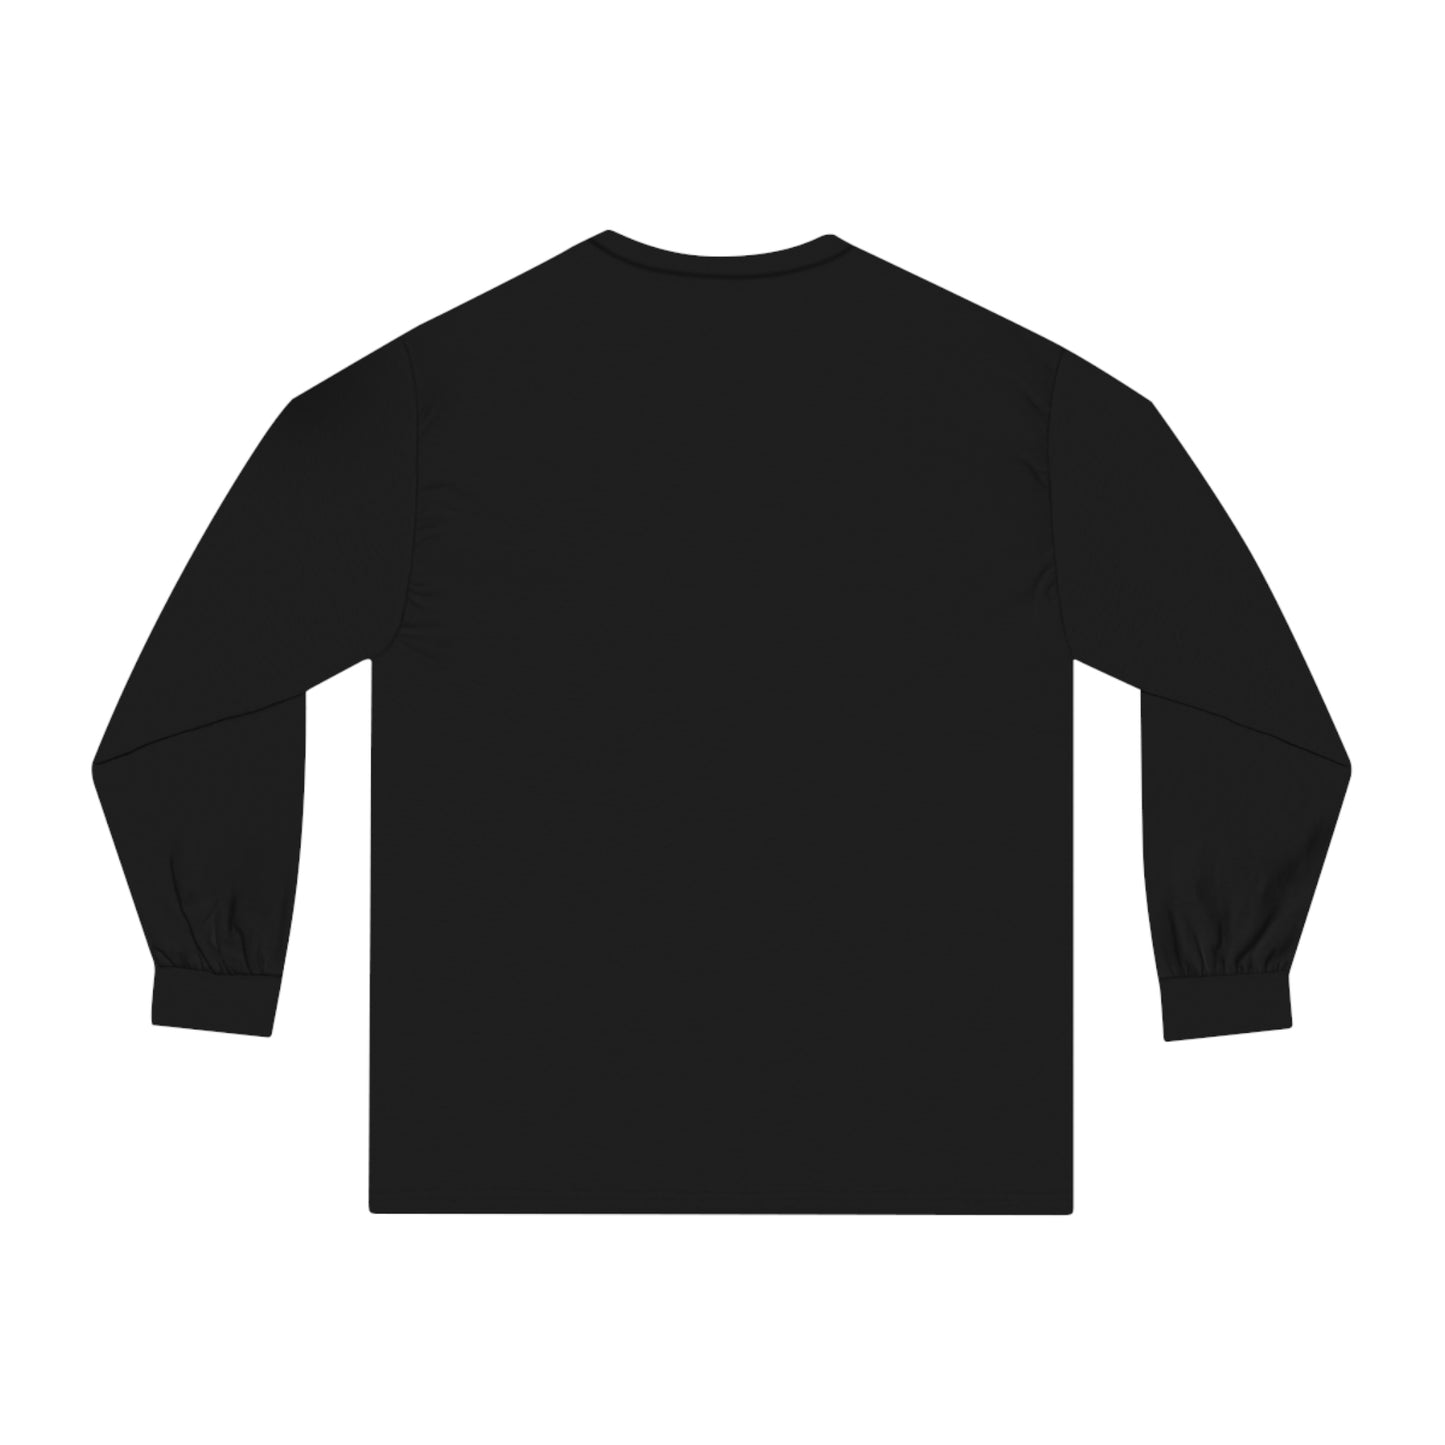 Gunner Cortez Classic Long Sleeve T-Shirt